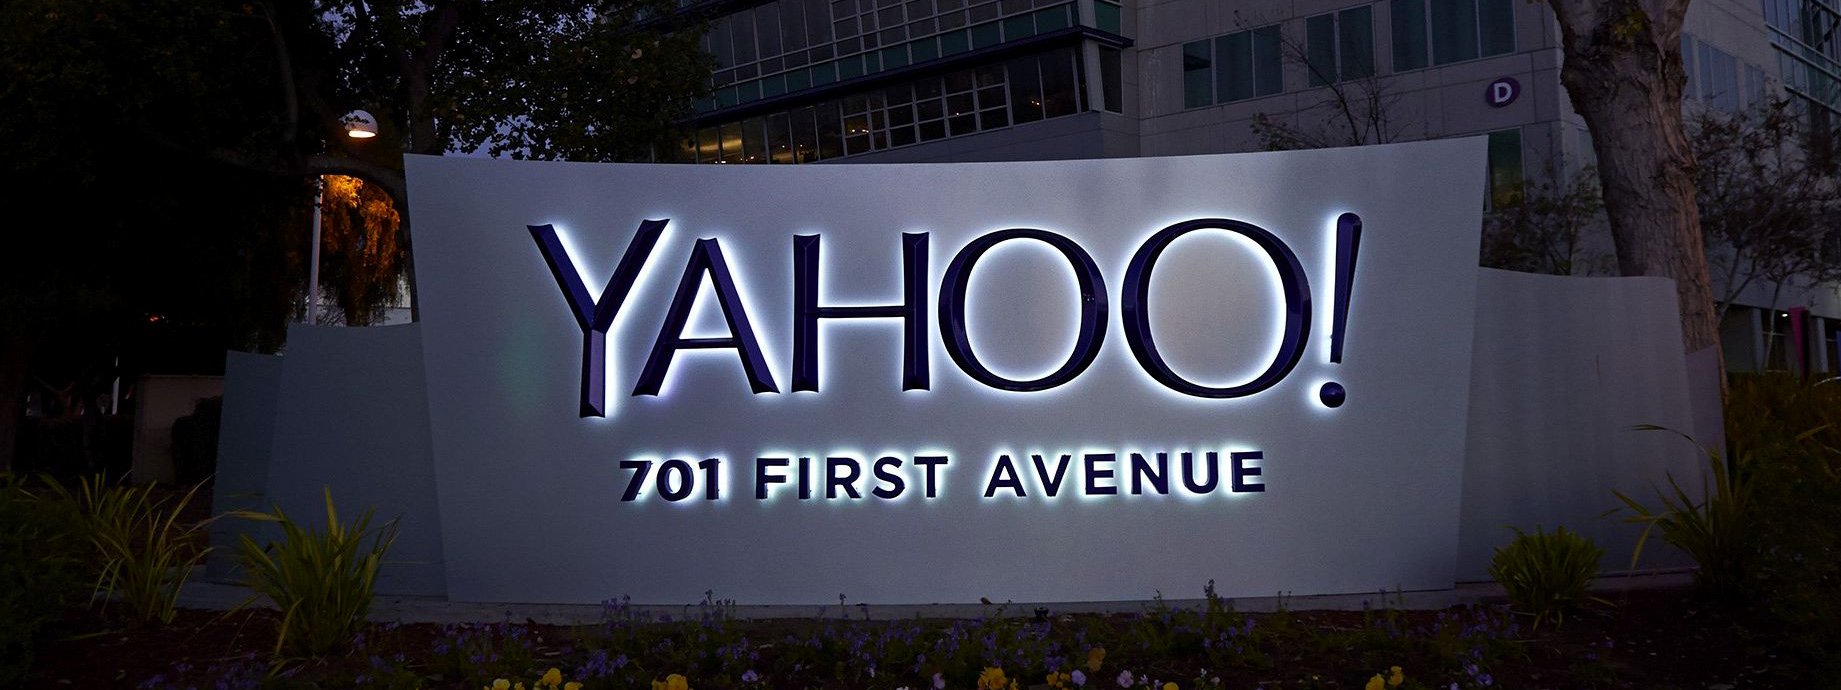 Hàng loạt tài khoản Yahoo bị lộ thông tin, 500 triệu anh em hãy đổi password và câu hỏi bảo mật ngay